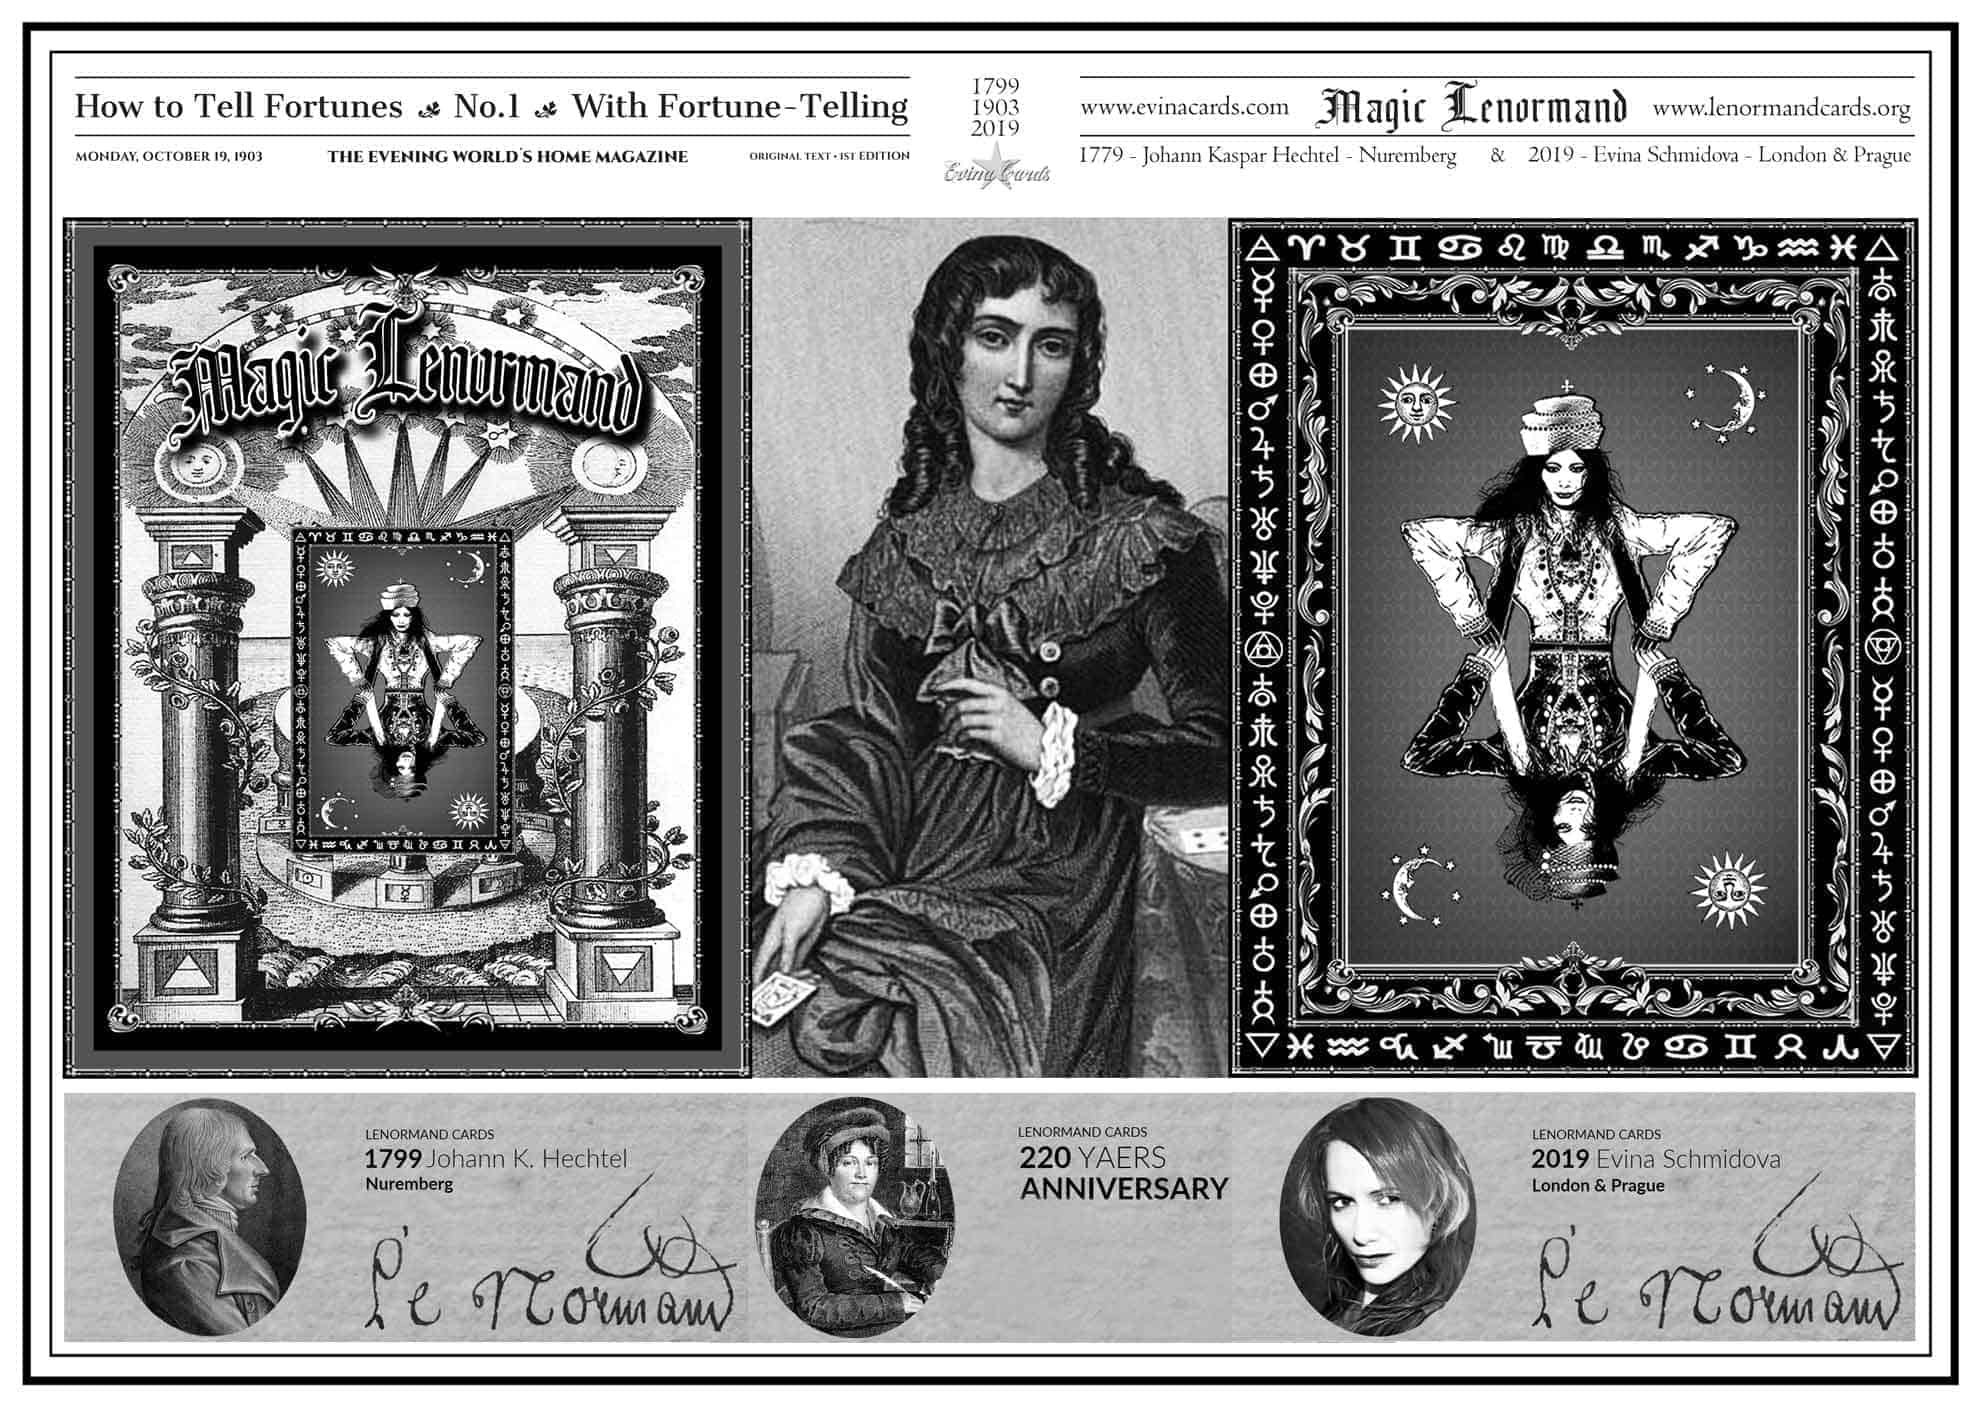 Magic-Lenormand-Cards-1799-1903-2019-retro